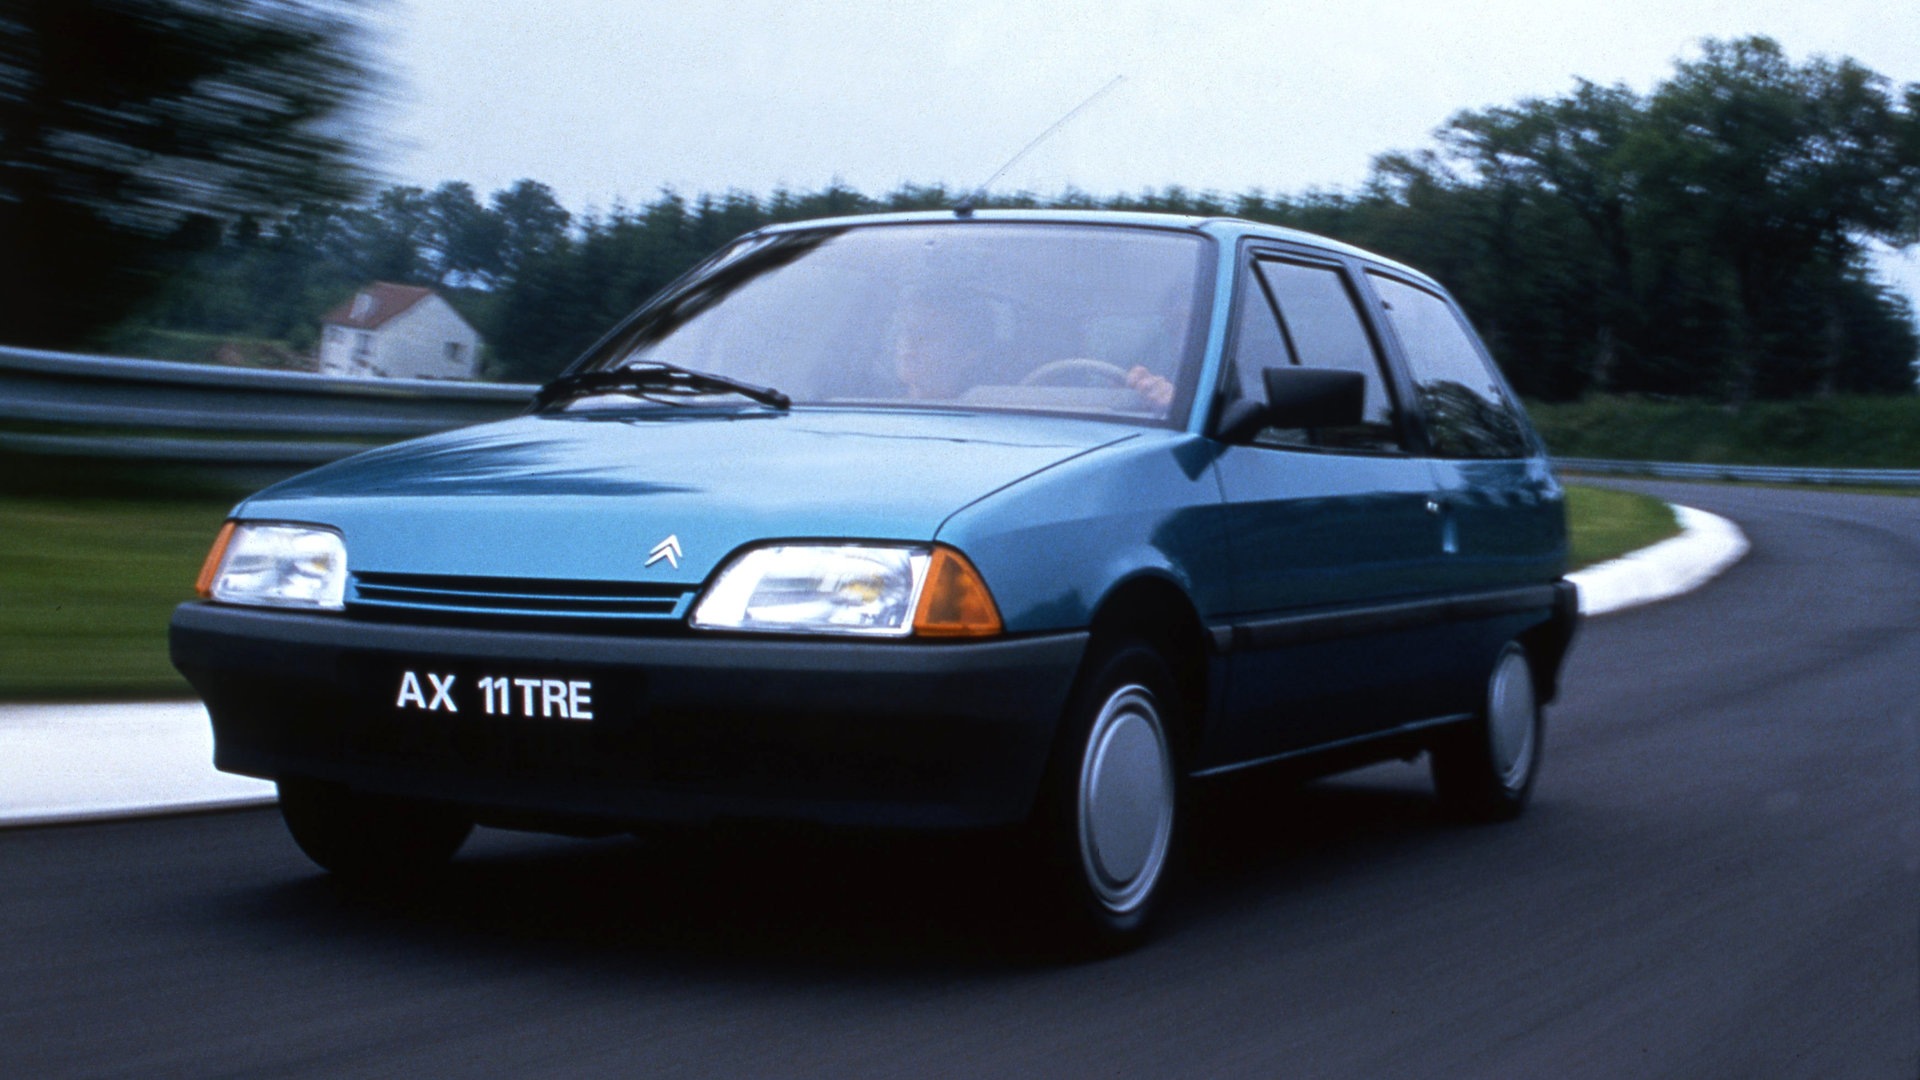 Coche del día: Citroën AX 11 TRE